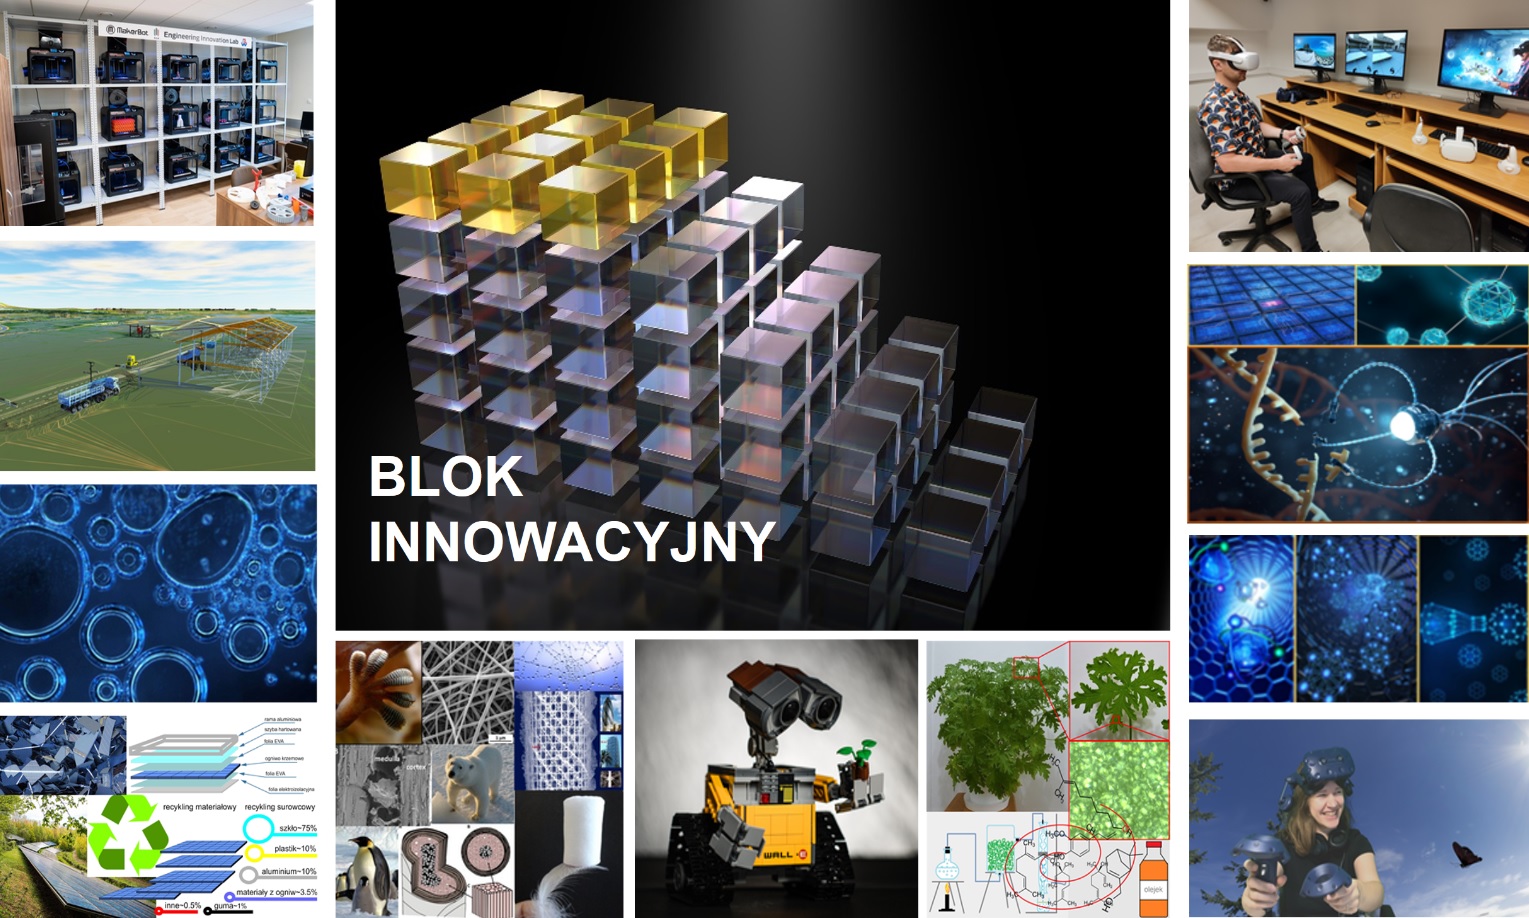 Na zdjęciu widać kolaż obrazujący różne aspekty innowacji w nauce i technologii. W lewym górnym rogu znajduje się zdjęcie nowoczesnego laboratorium z szeregiem drukarek 3D. Obok niego widzimy trójwymiarową wizualizację konstrukcji inżynieryjnej, która przypomina instalację przemysłową. Centralnym elementem jest trójwymiarowa grafika przedstawiająca bloki o różnej przejrzystości i kolorach, z napisem 'BLOK INNOWACYJNY' umieszczonym pośrodku. W prawym górnym rogu widzimy osobę korzystającą z gogli wirtualnej rzeczywistości. Po lewej stronie u dołu znajduje się obrazek mikroskopijnych bąbelków, a obok niego diagram przedstawiający procentowy udział recyklingu różnych materiałów. Poniżej mamy zdjęcia różnych aspektów inżynierii: od robotyki, przez rośliny, po interaktywną zabawę z wykorzystaniem technologii VR. Zdjęcia i grafiki tworzą mozaikę pokazującą szeroki zakres innowacji, od badań podstawowych po praktyczne zastosowania w inżynierii i zarządzaniu.